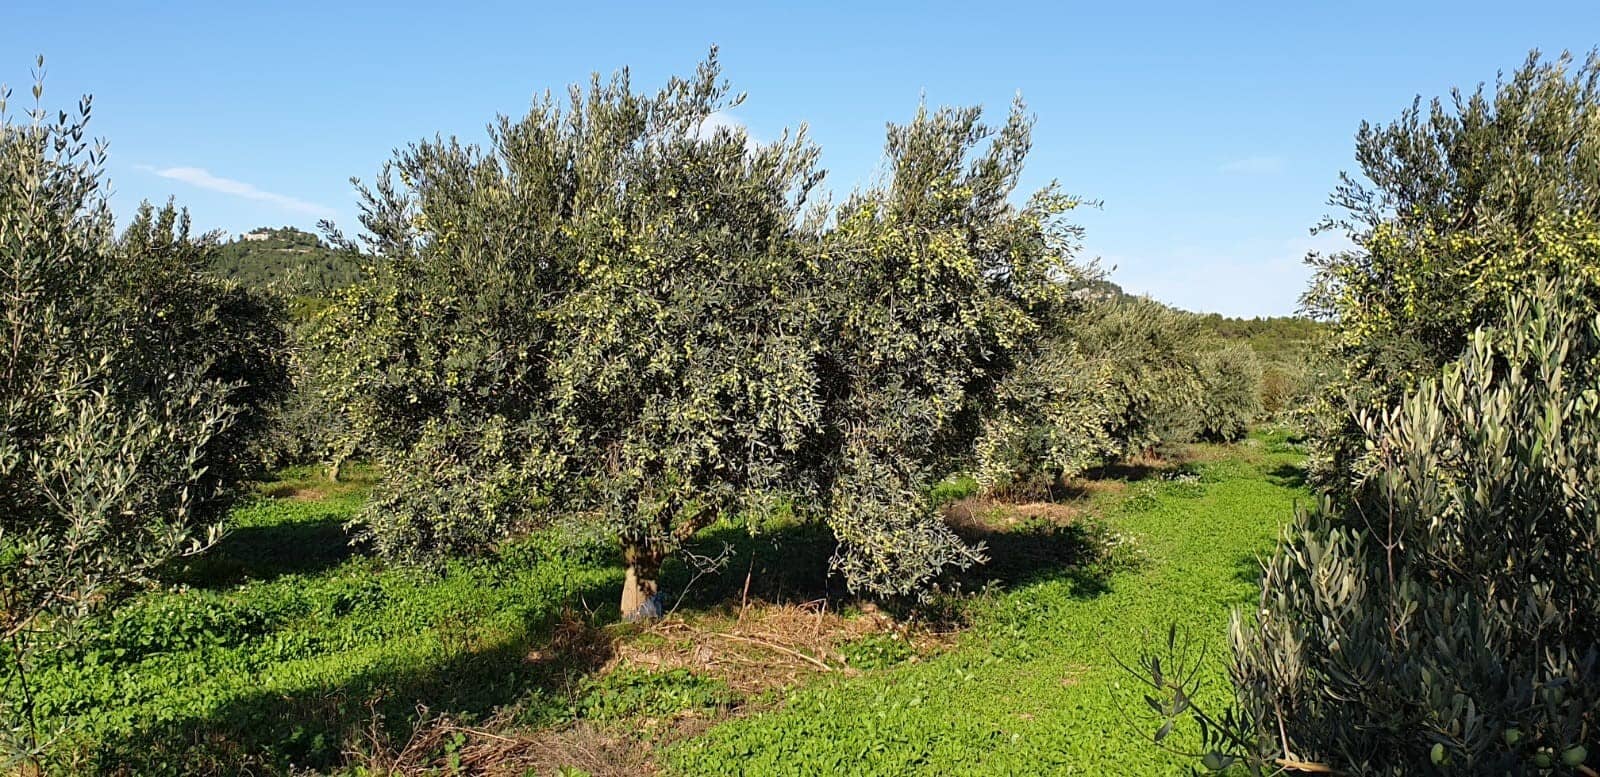 l'europe-profil-la-meilleure-production-d-huiles-d-olive-une-tradition-familiale-prend-racine-au-moulin-de-la-coquille-olive-oil-times